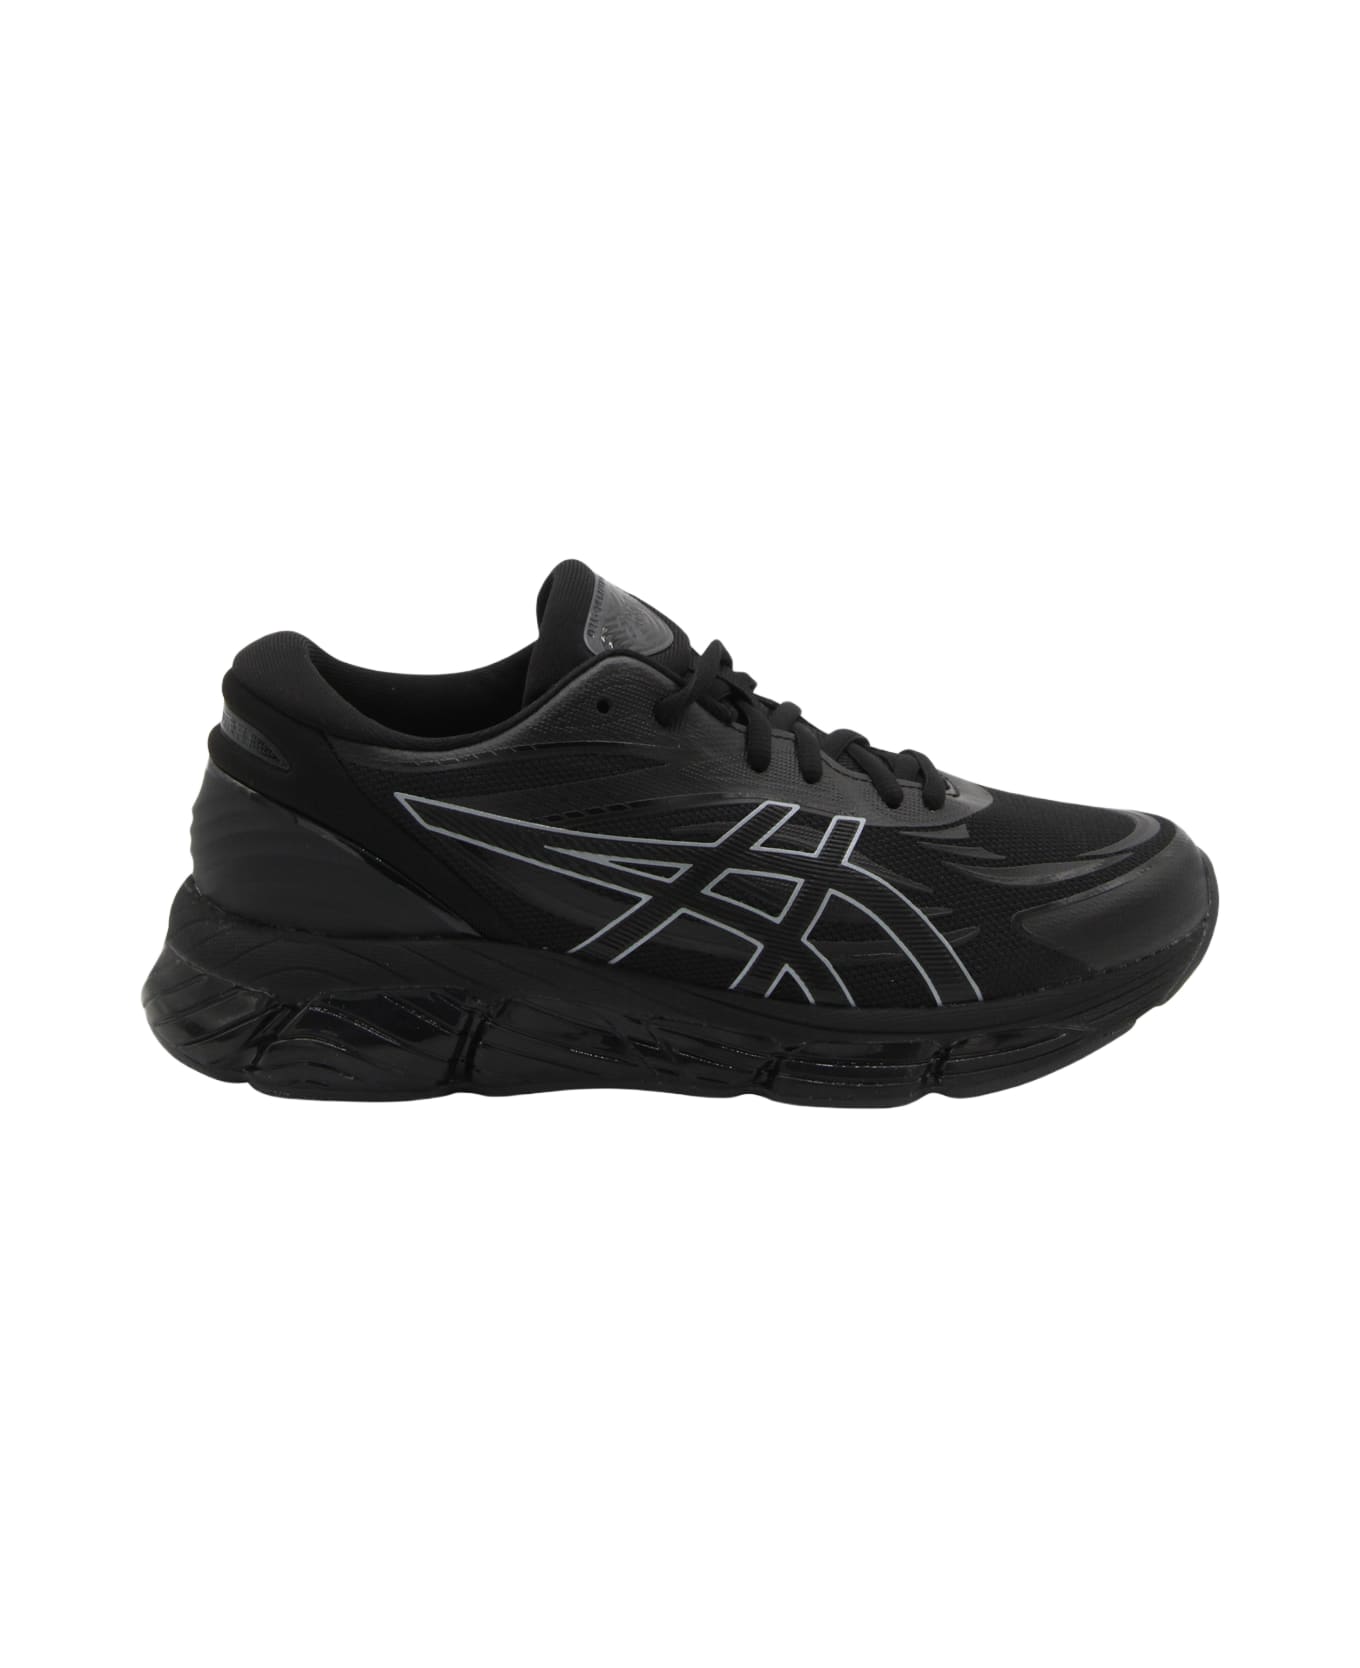 Asics Black Gel Quantun 360 Sneakers - BLACKBLACK